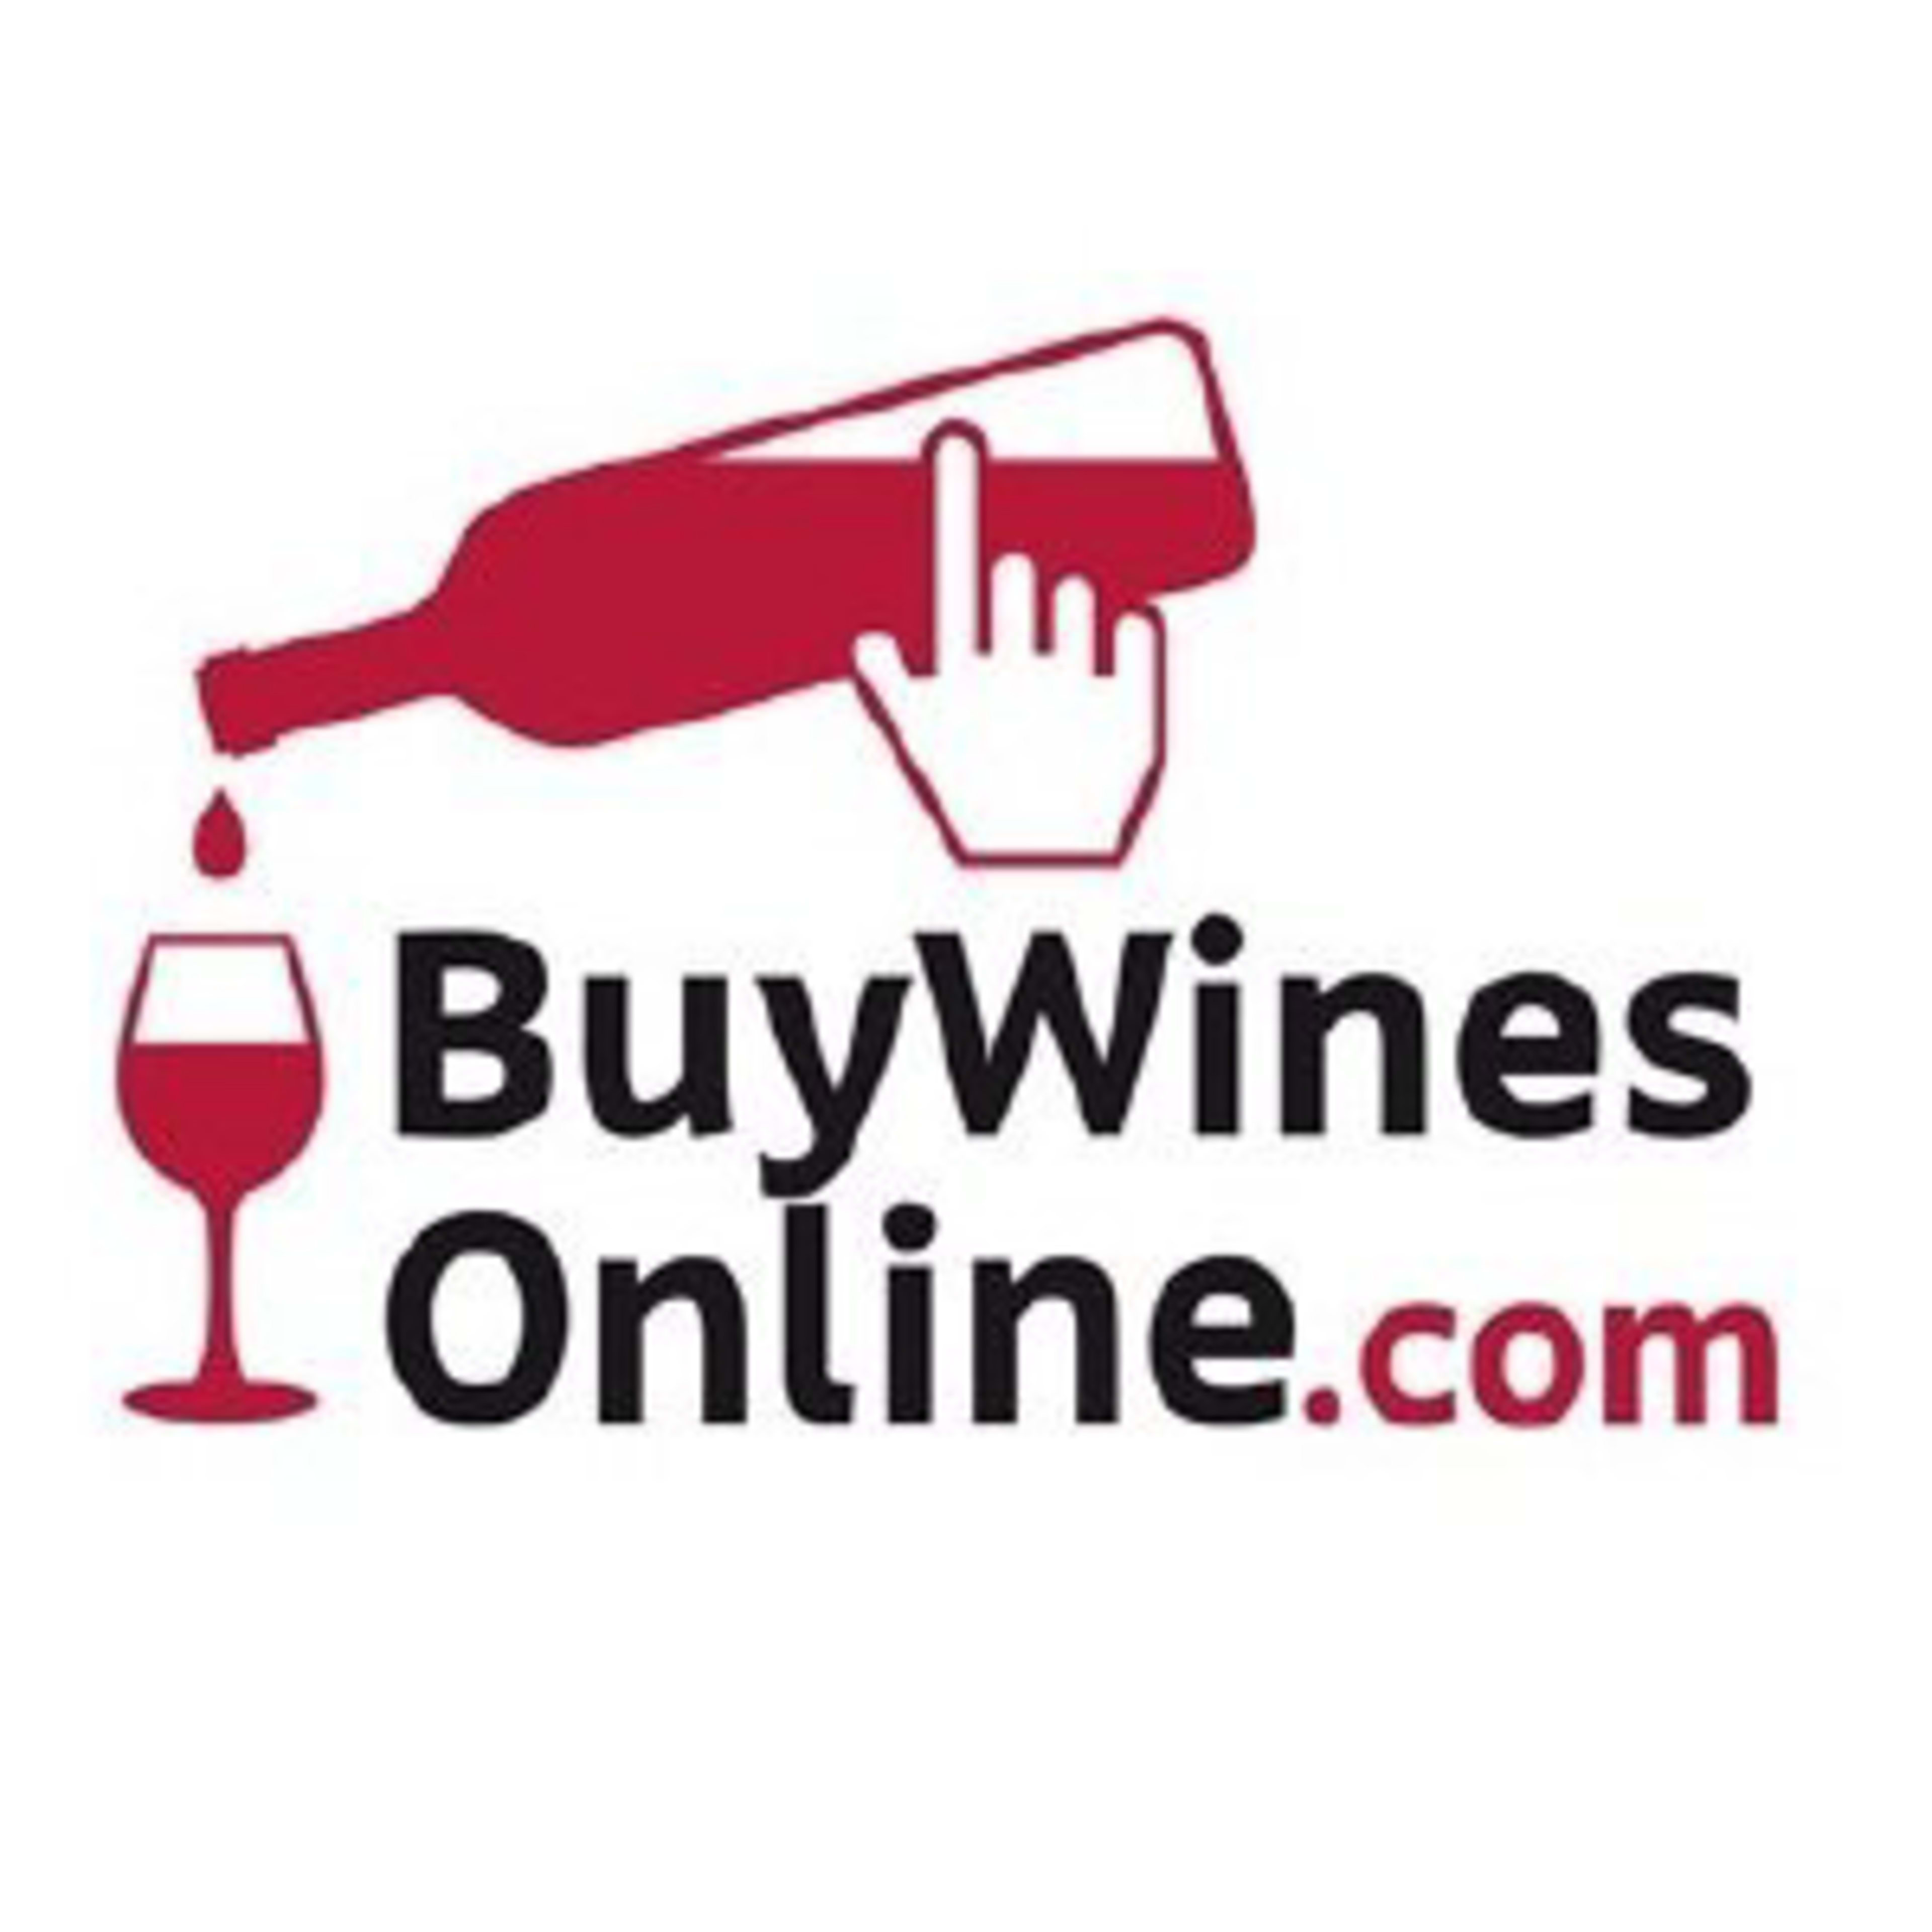 Buy Wines OnlineCode